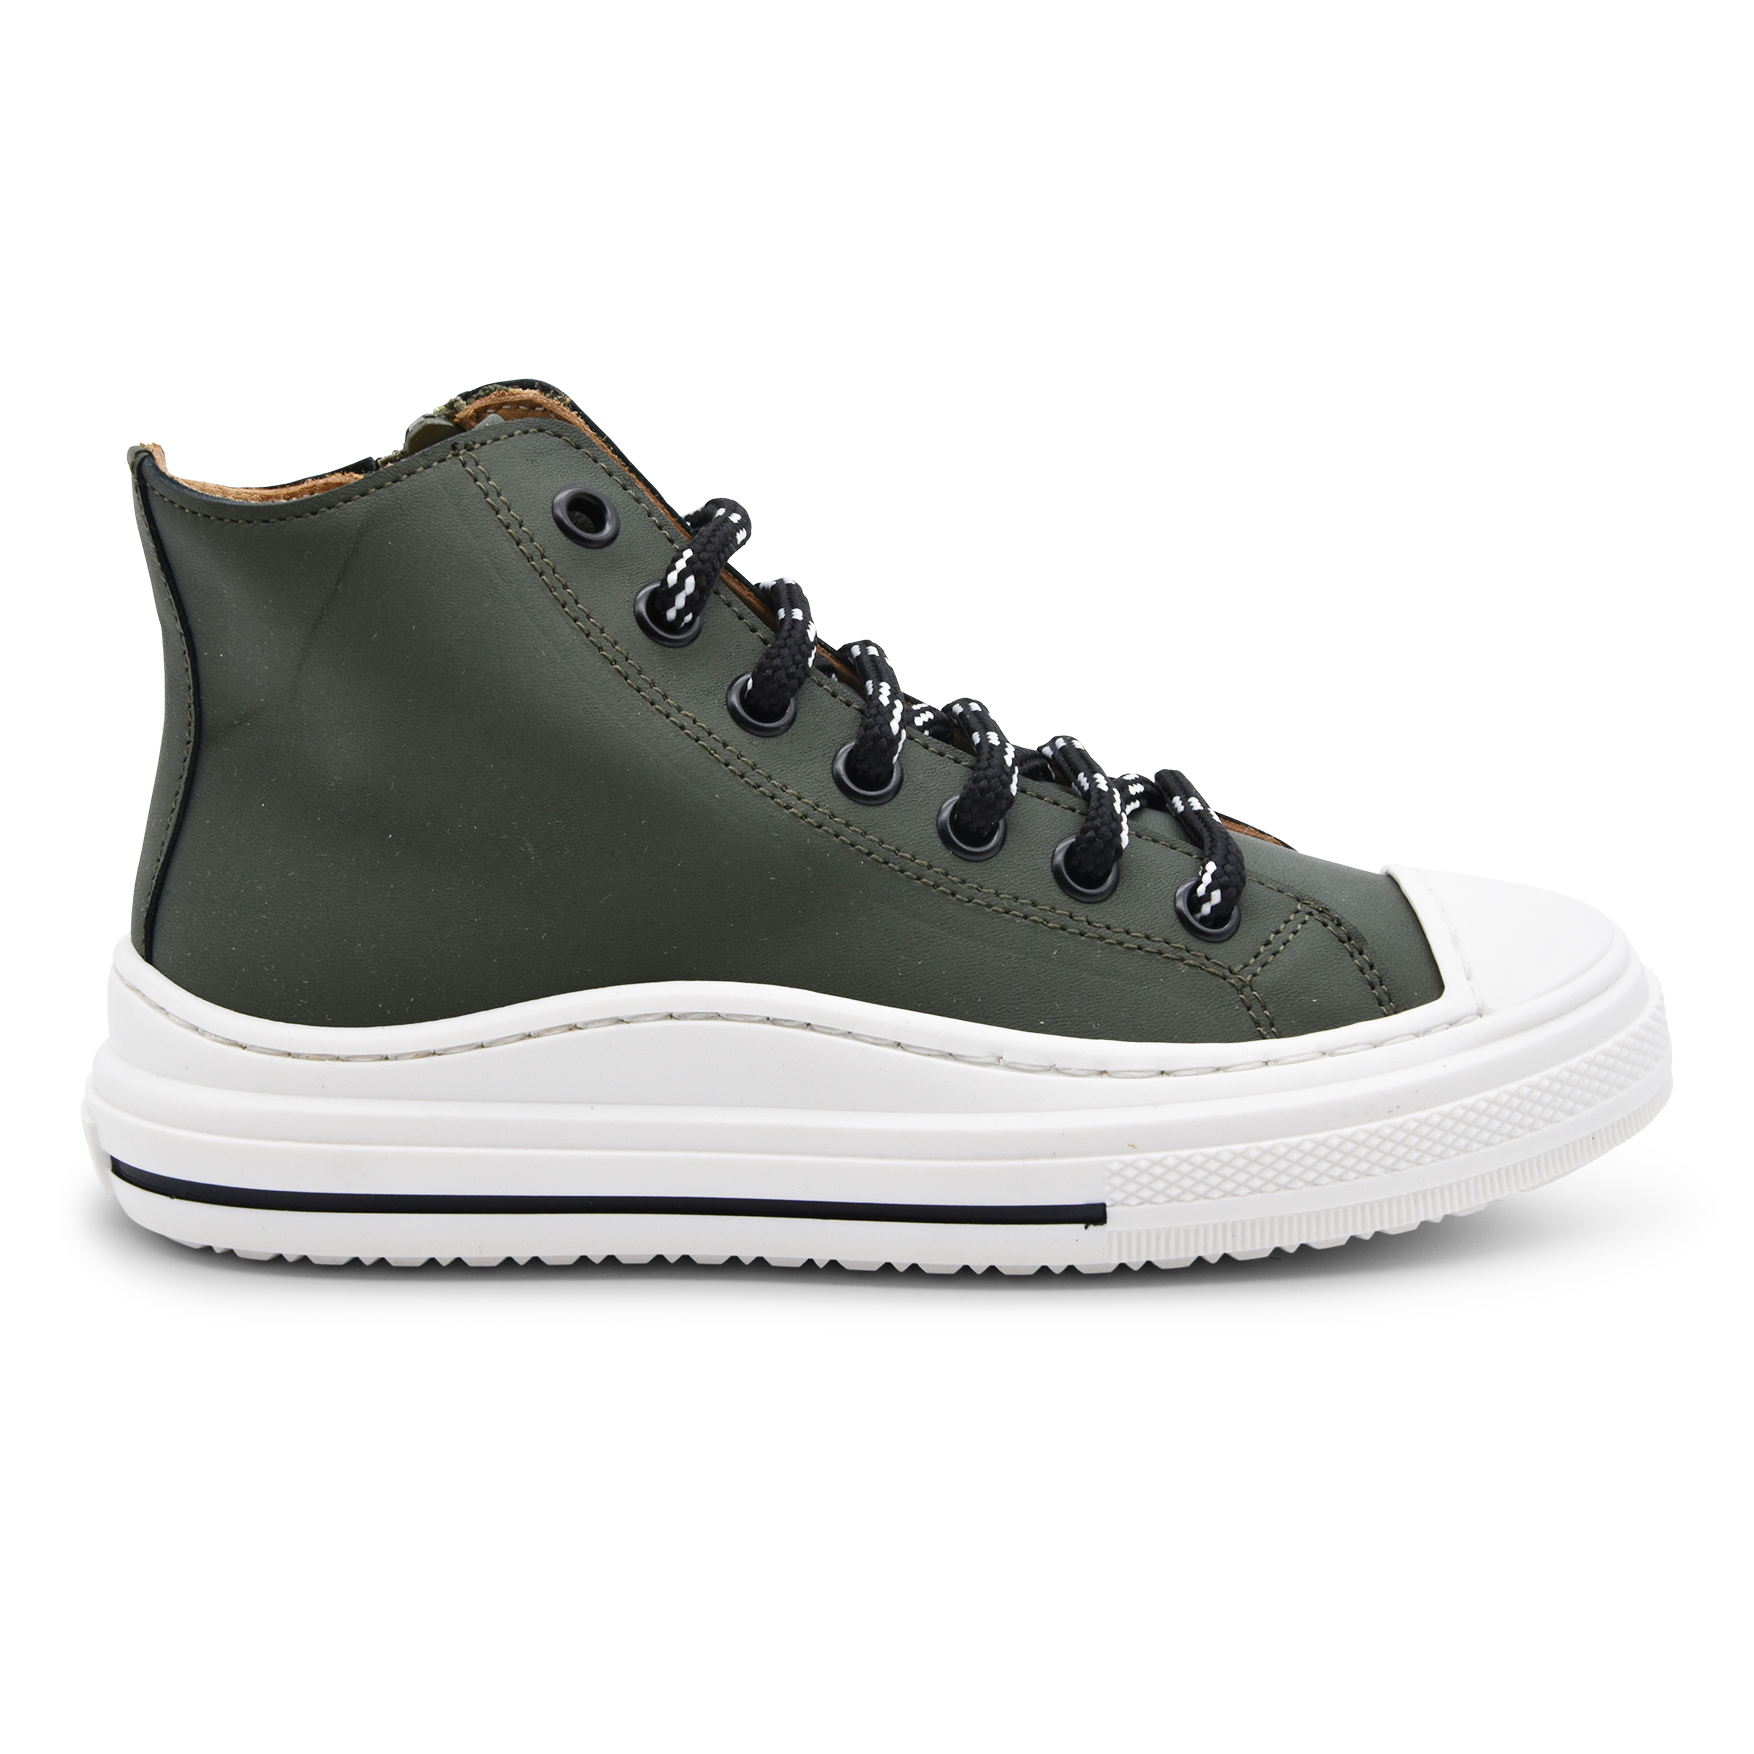 Zecchino D'oro, made in Italy, sneakers alta, pelle, verde, lacci zip, profilo